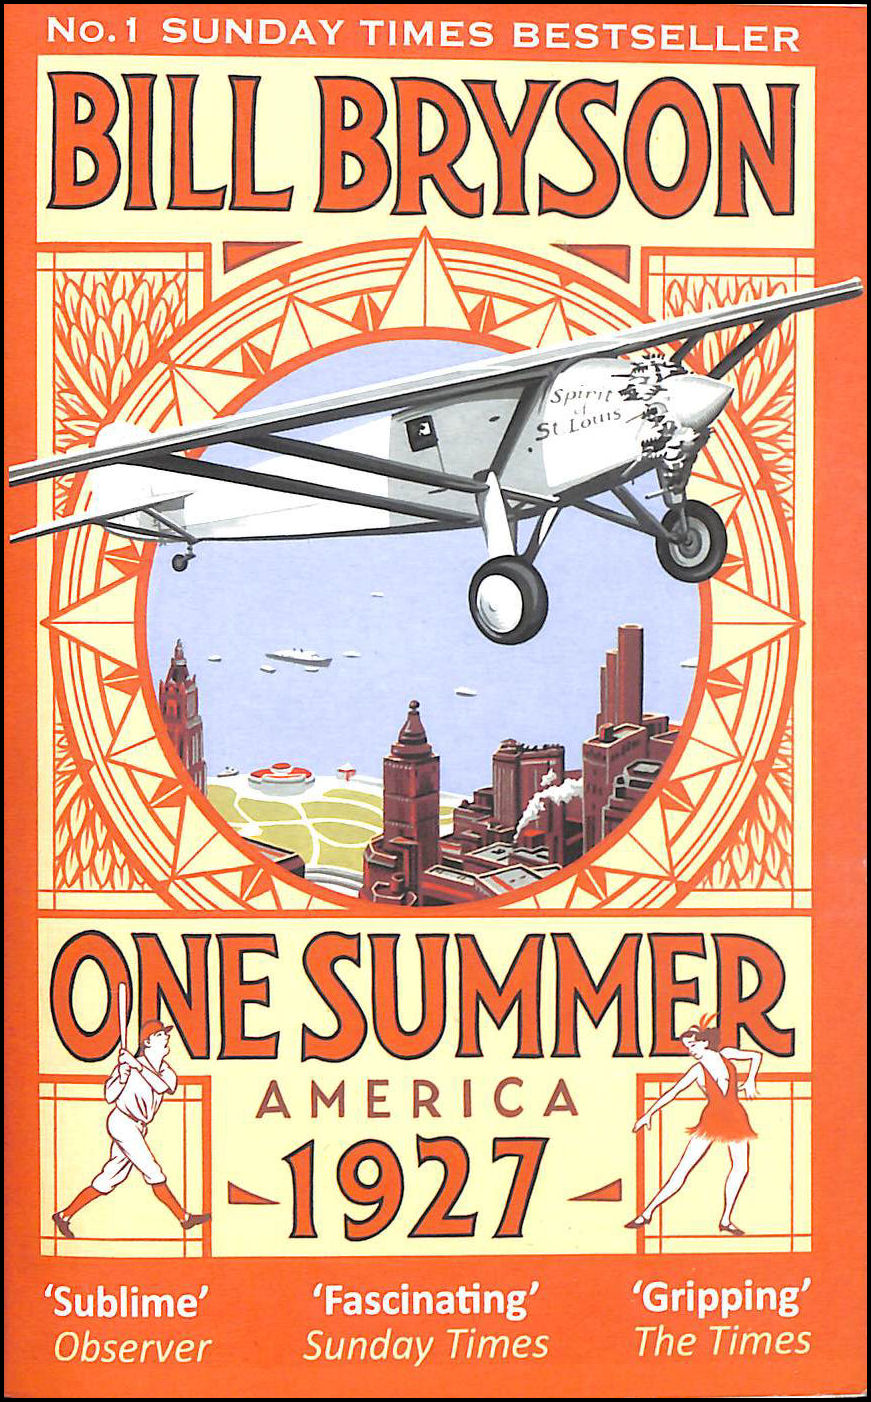 BRYSON, BILL - One Summer: America 1927